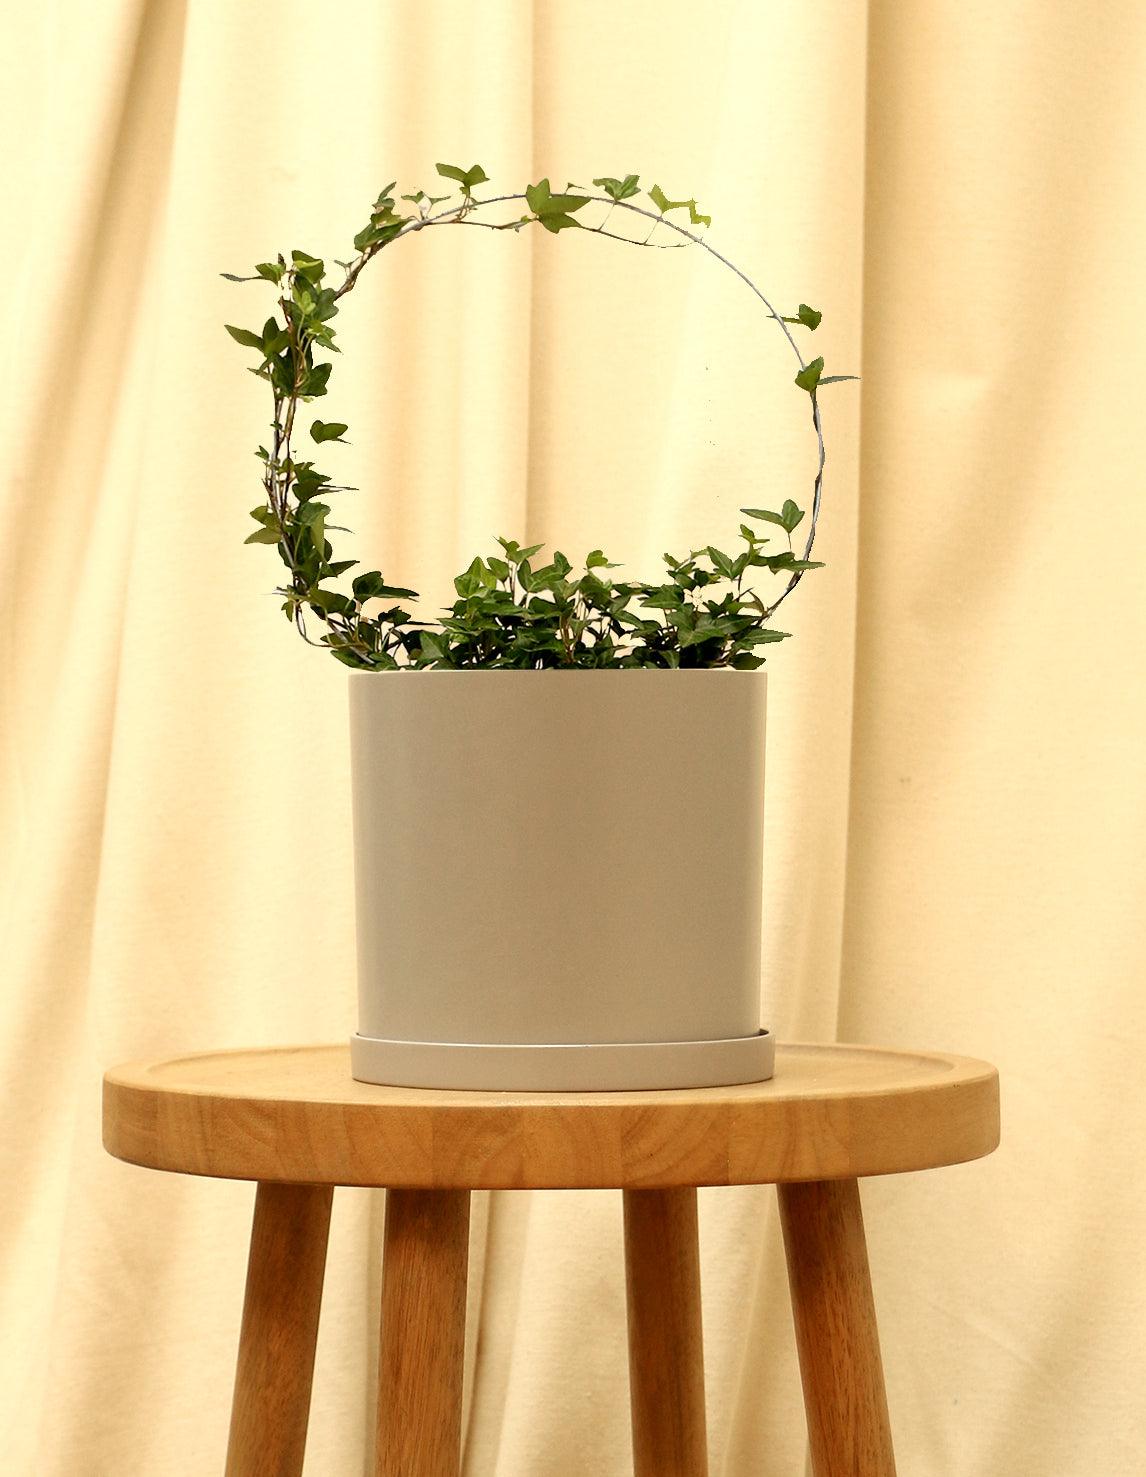 Medium English Ivy Plant in grey pot.